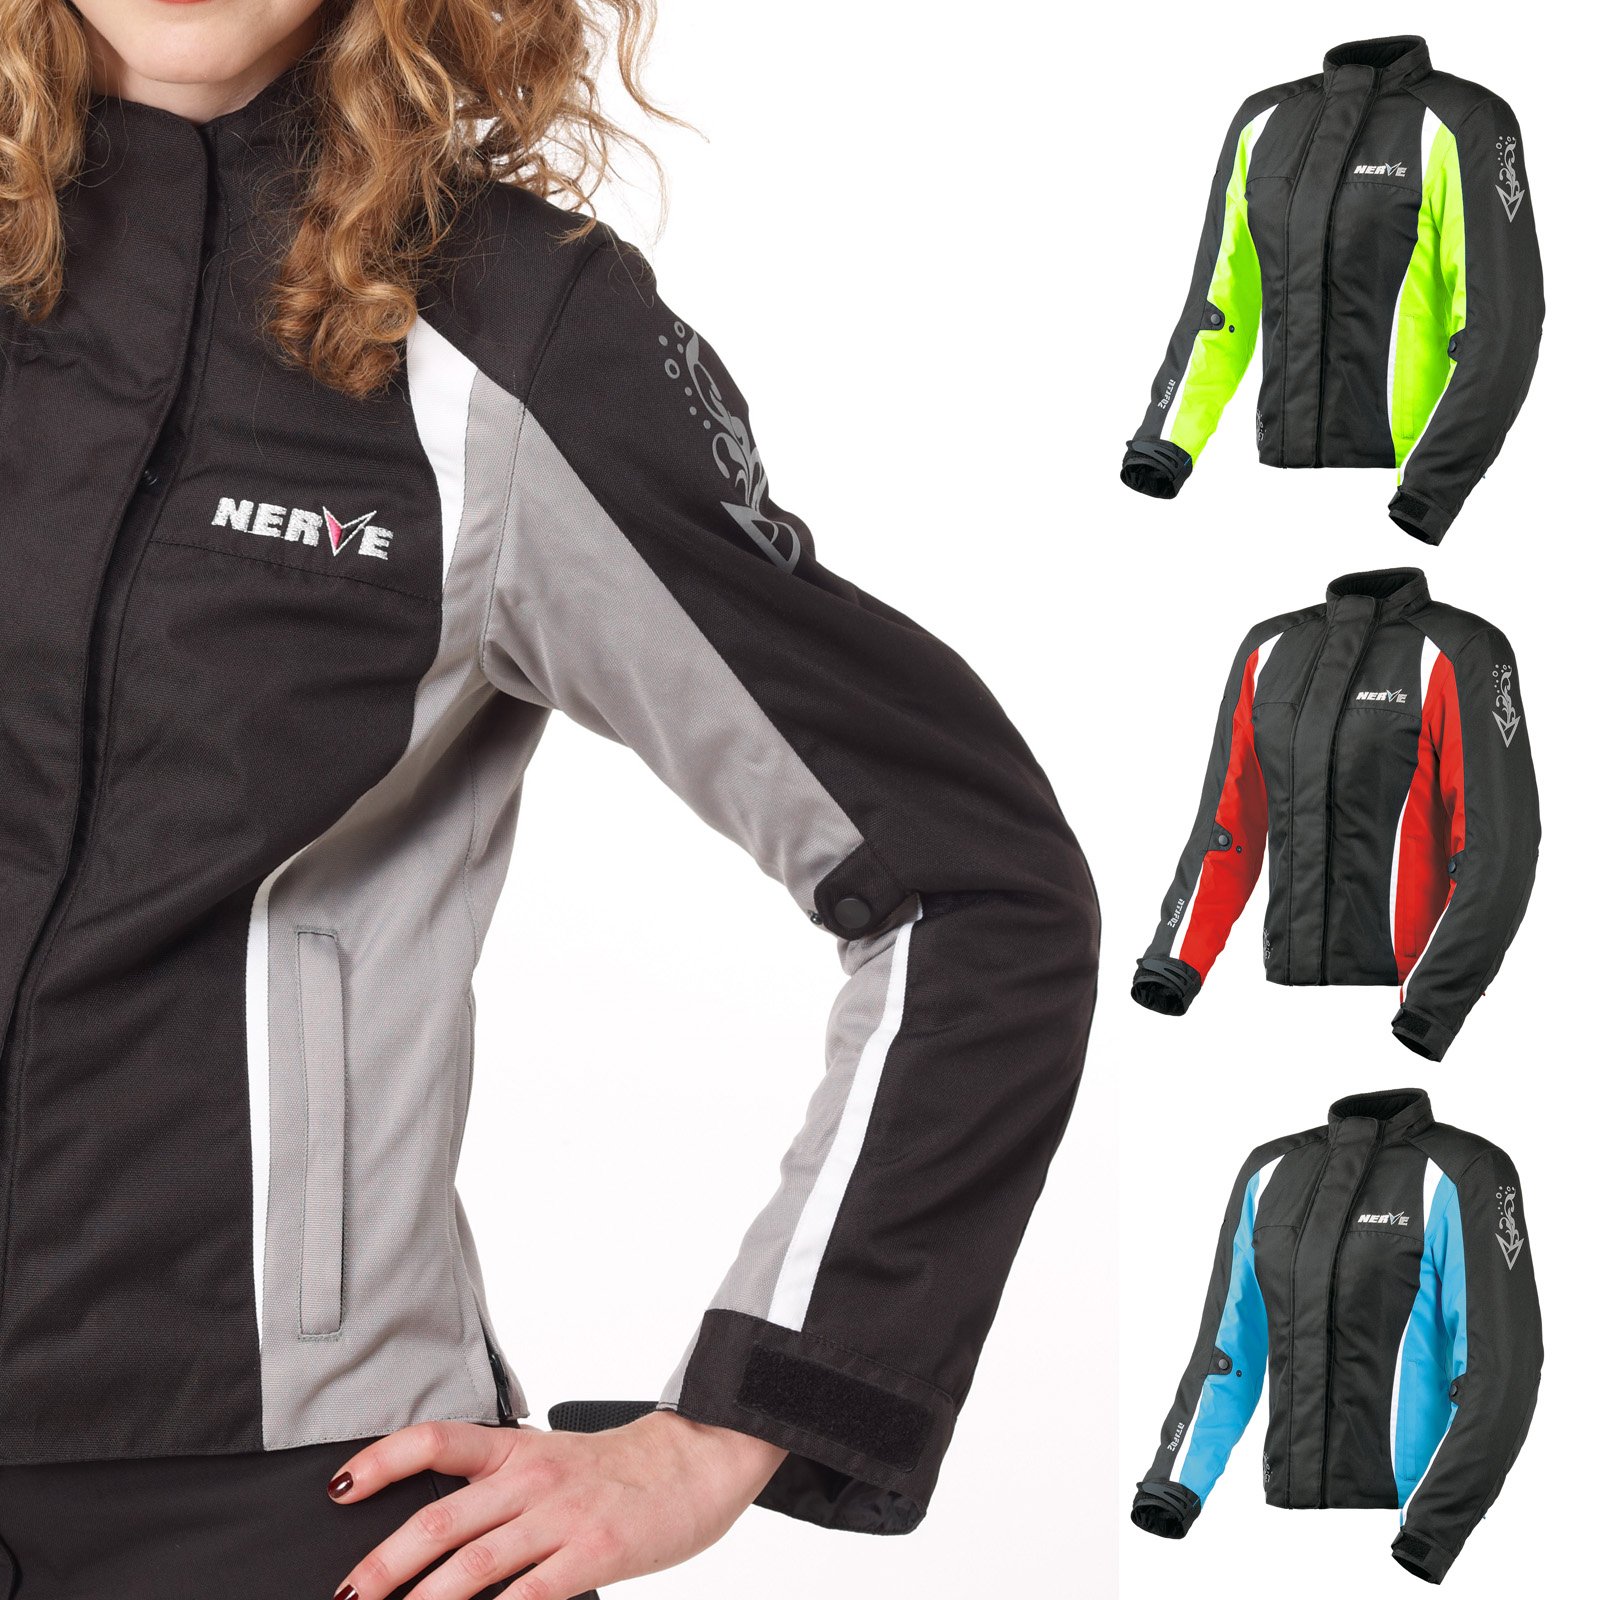 Nerve Shop Motorradjacke -Unique- Motorrad Damen Wasserdicht Jacke mit Protektoren Sommer Winter Textil Frauen - schwarz-silber - 36